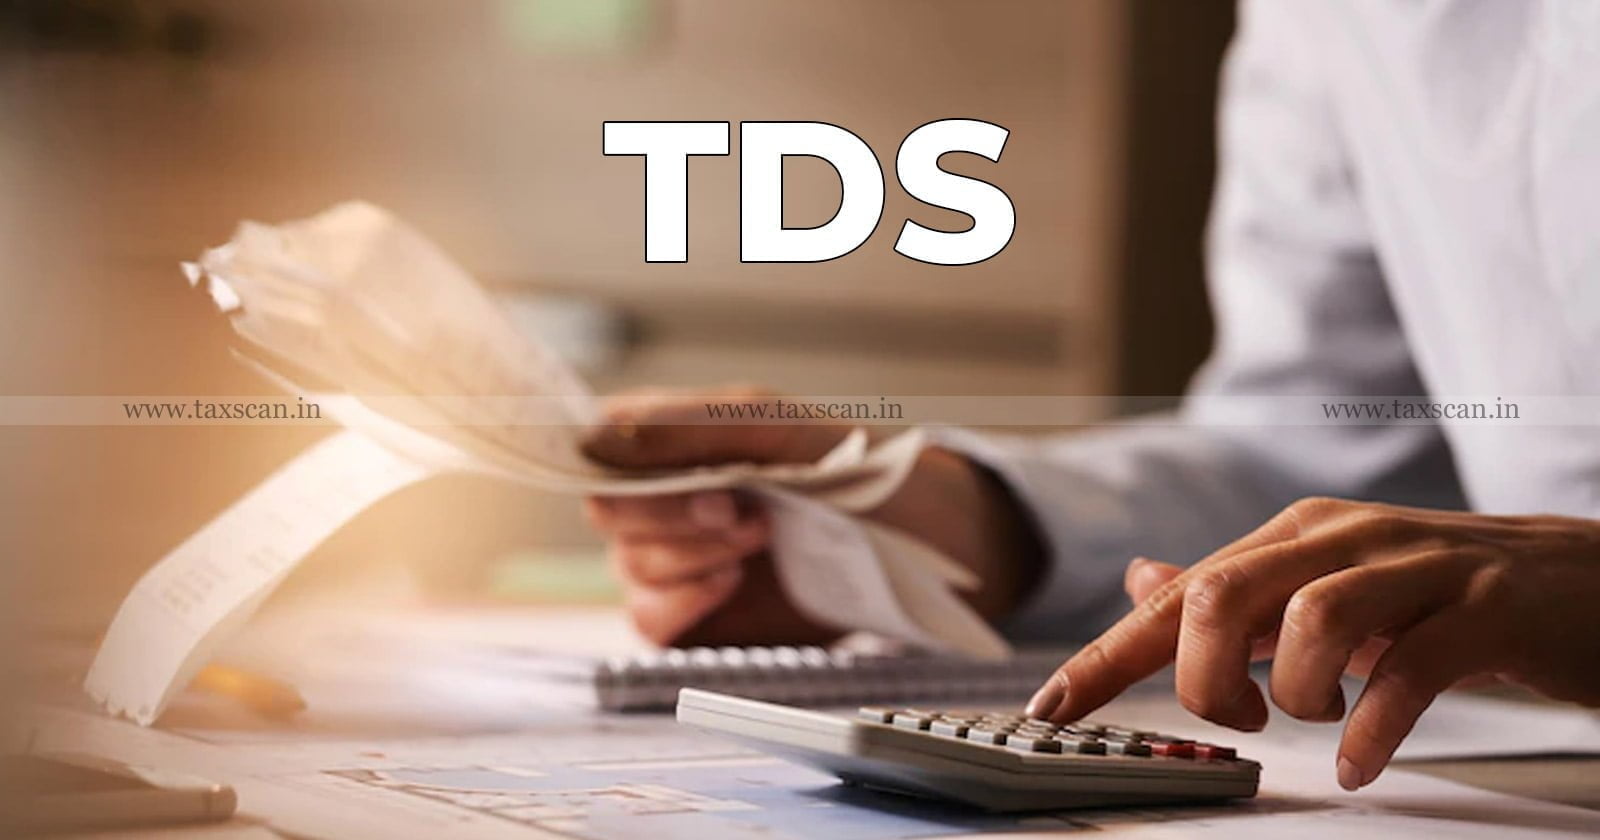 Reimbursement - Cost - basis - FTS - TDS - ITAT - TAXSCAN